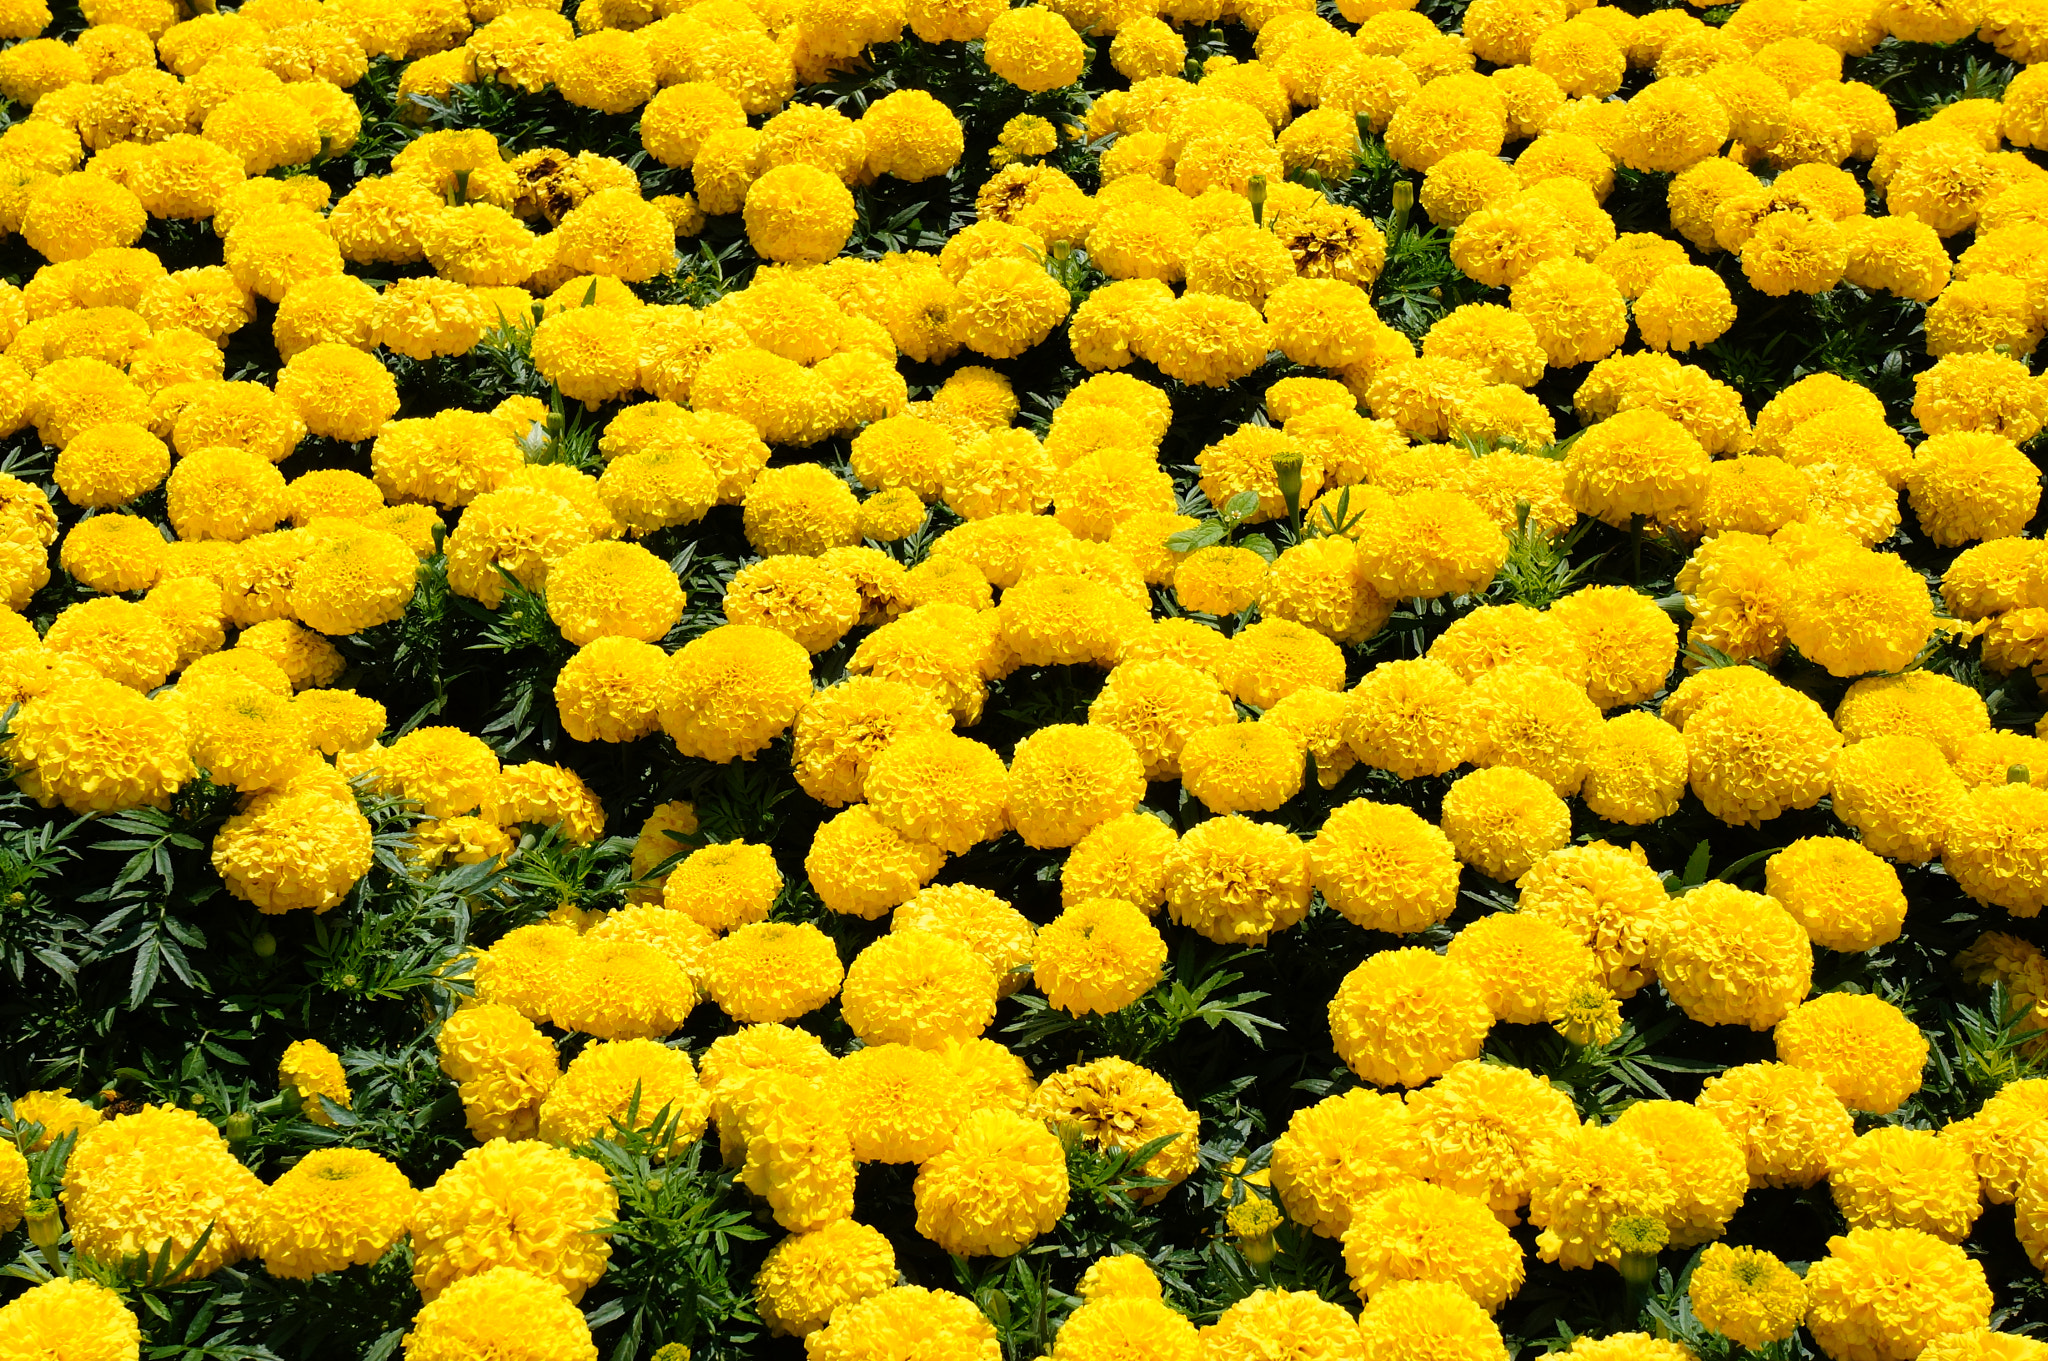 Sony Alpha NEX-6 + Sony E 18-55mm F3.5-5.6 OSS sample photo. Many yellow flowers photography